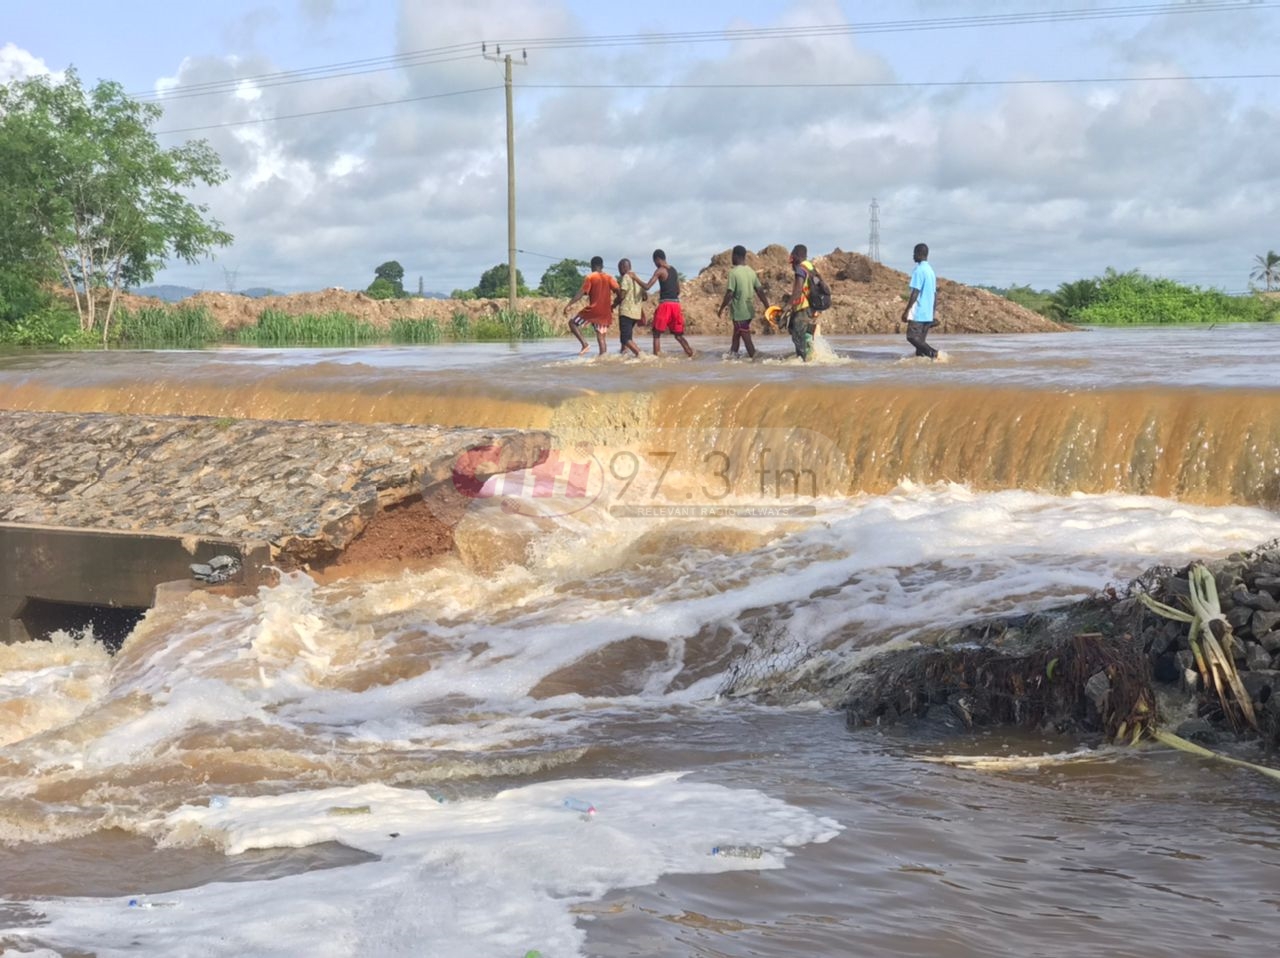 Accra-Winneba Highway collapses at Okyereko after contractor diverts river